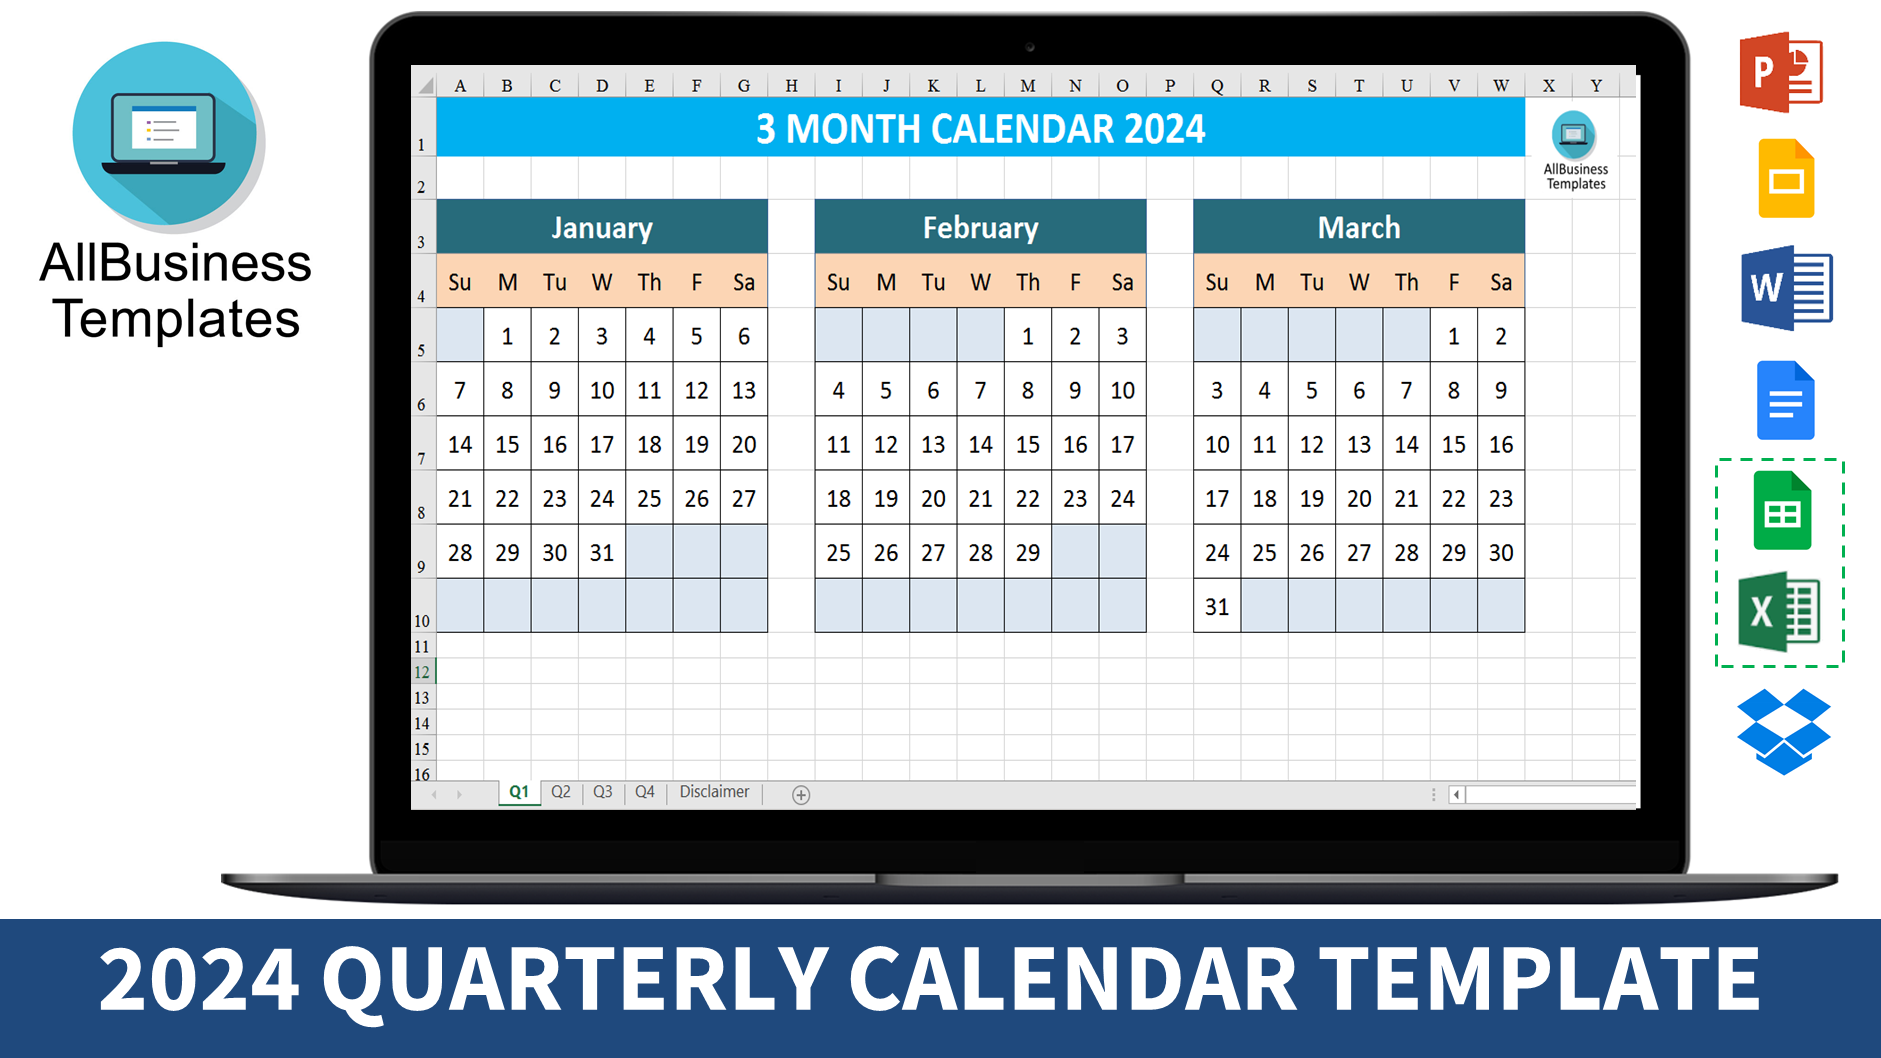 3 month calendar 2024 template